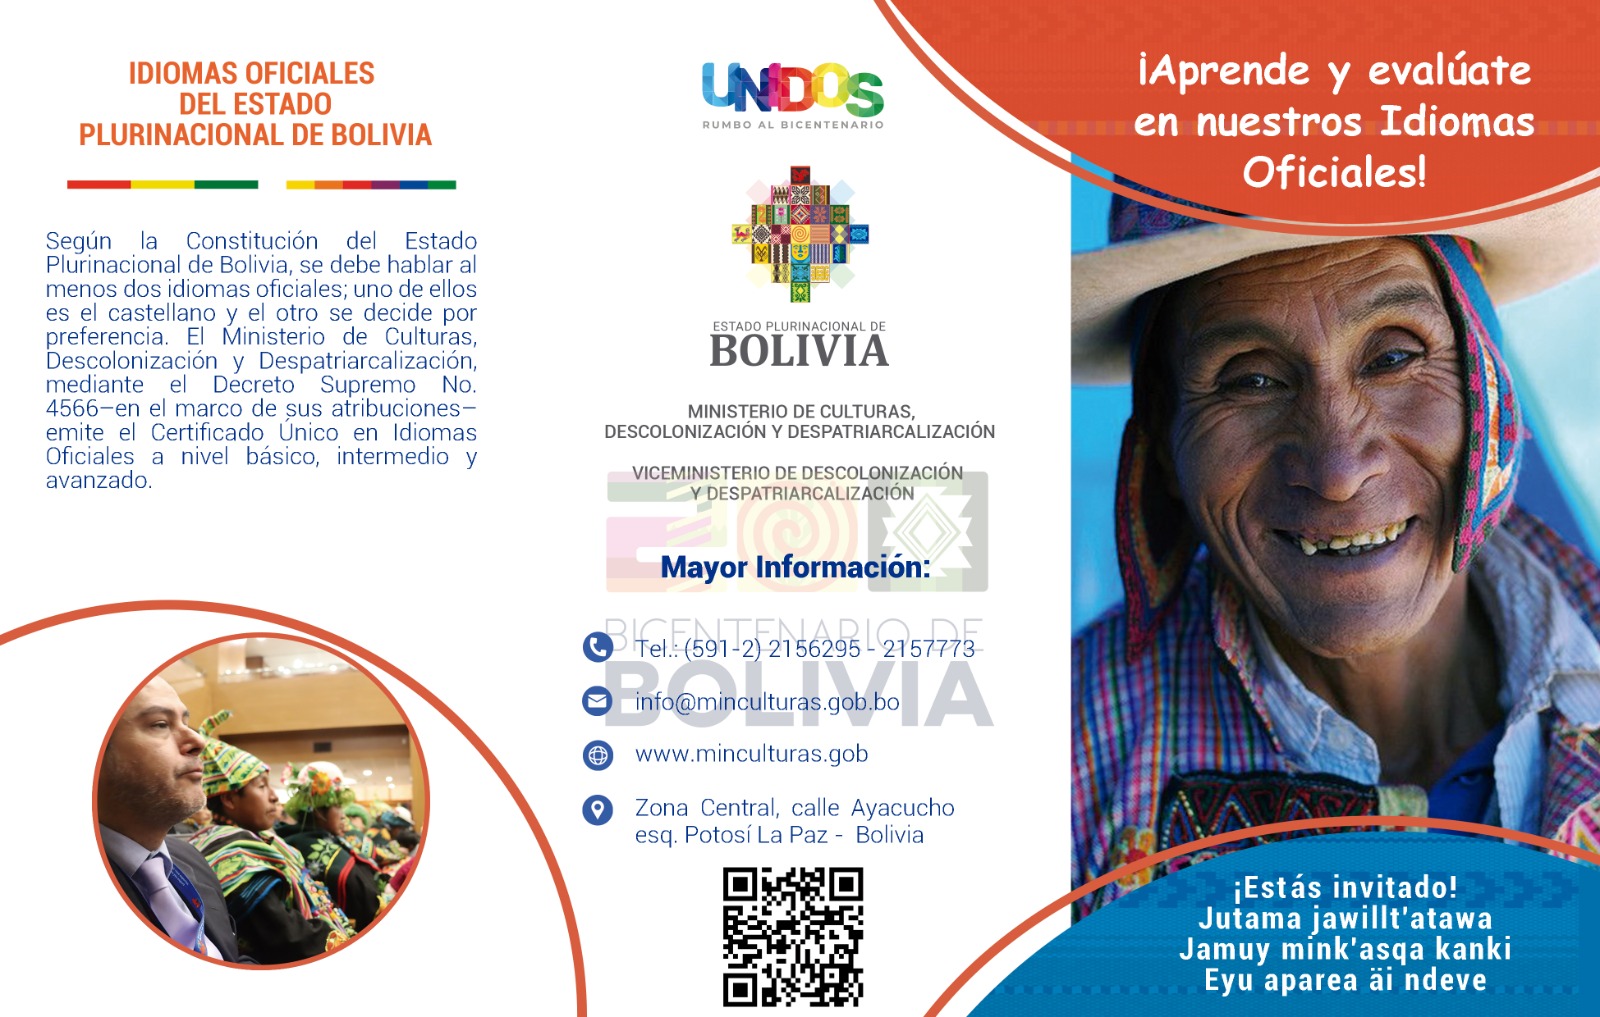 IDIOMAS OFICIALES DEL ESTADO PLURINACIONAL DE BOLIVIA